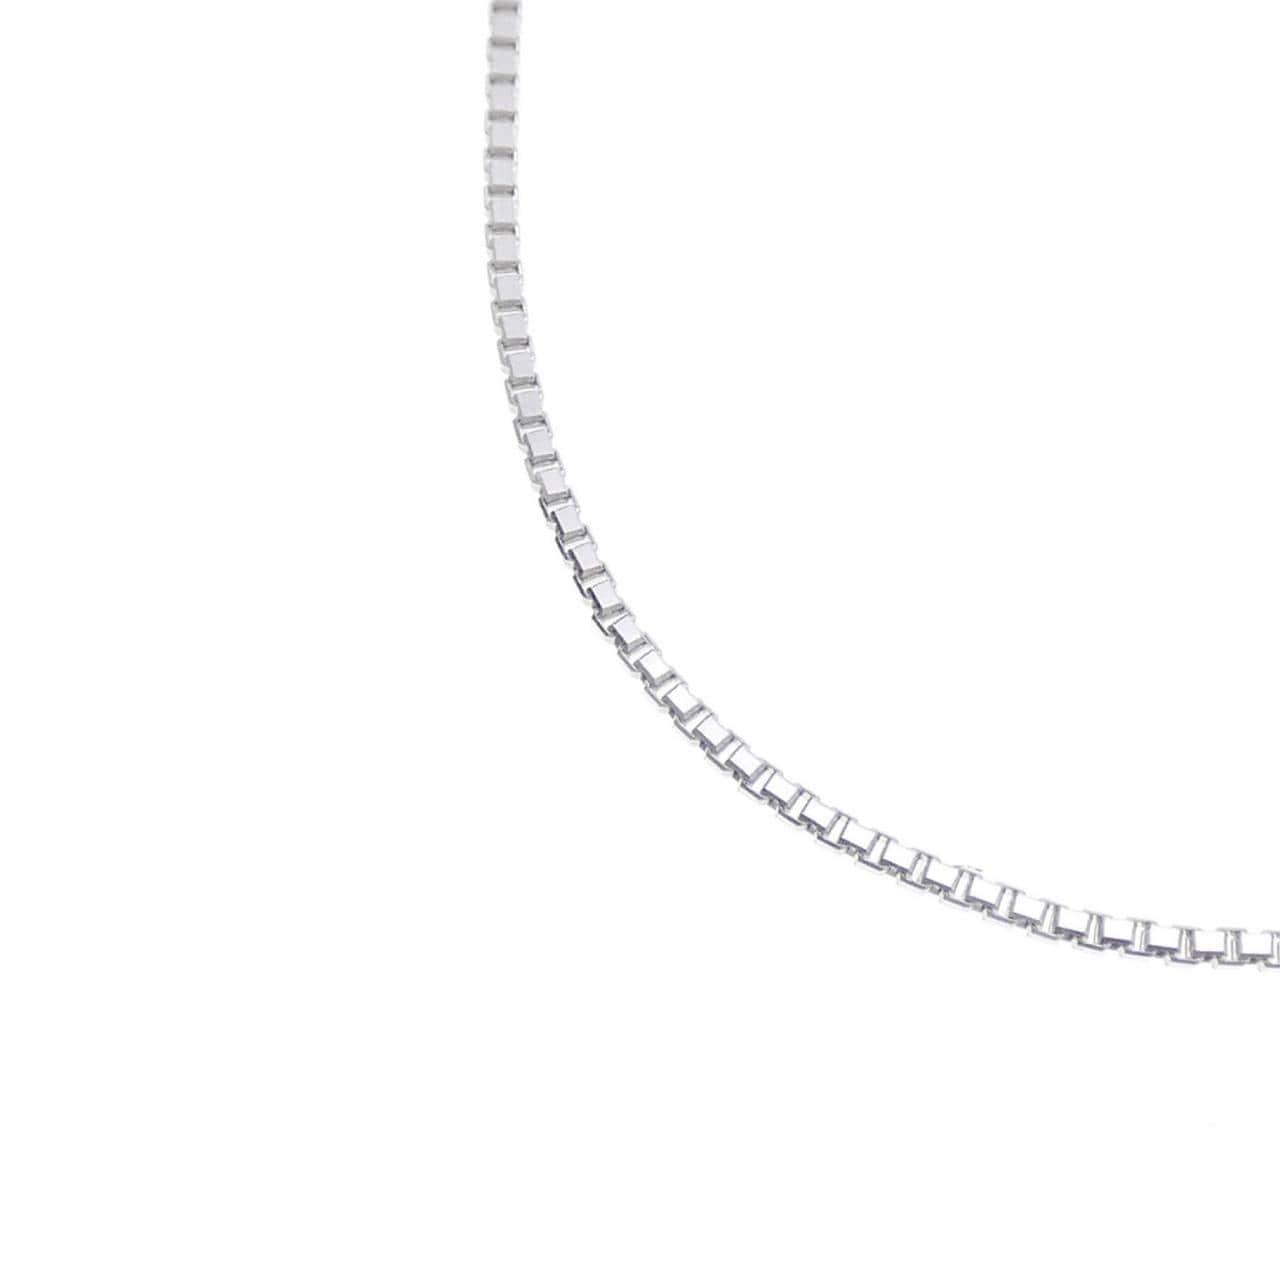 PT999 Venetian chain necklace